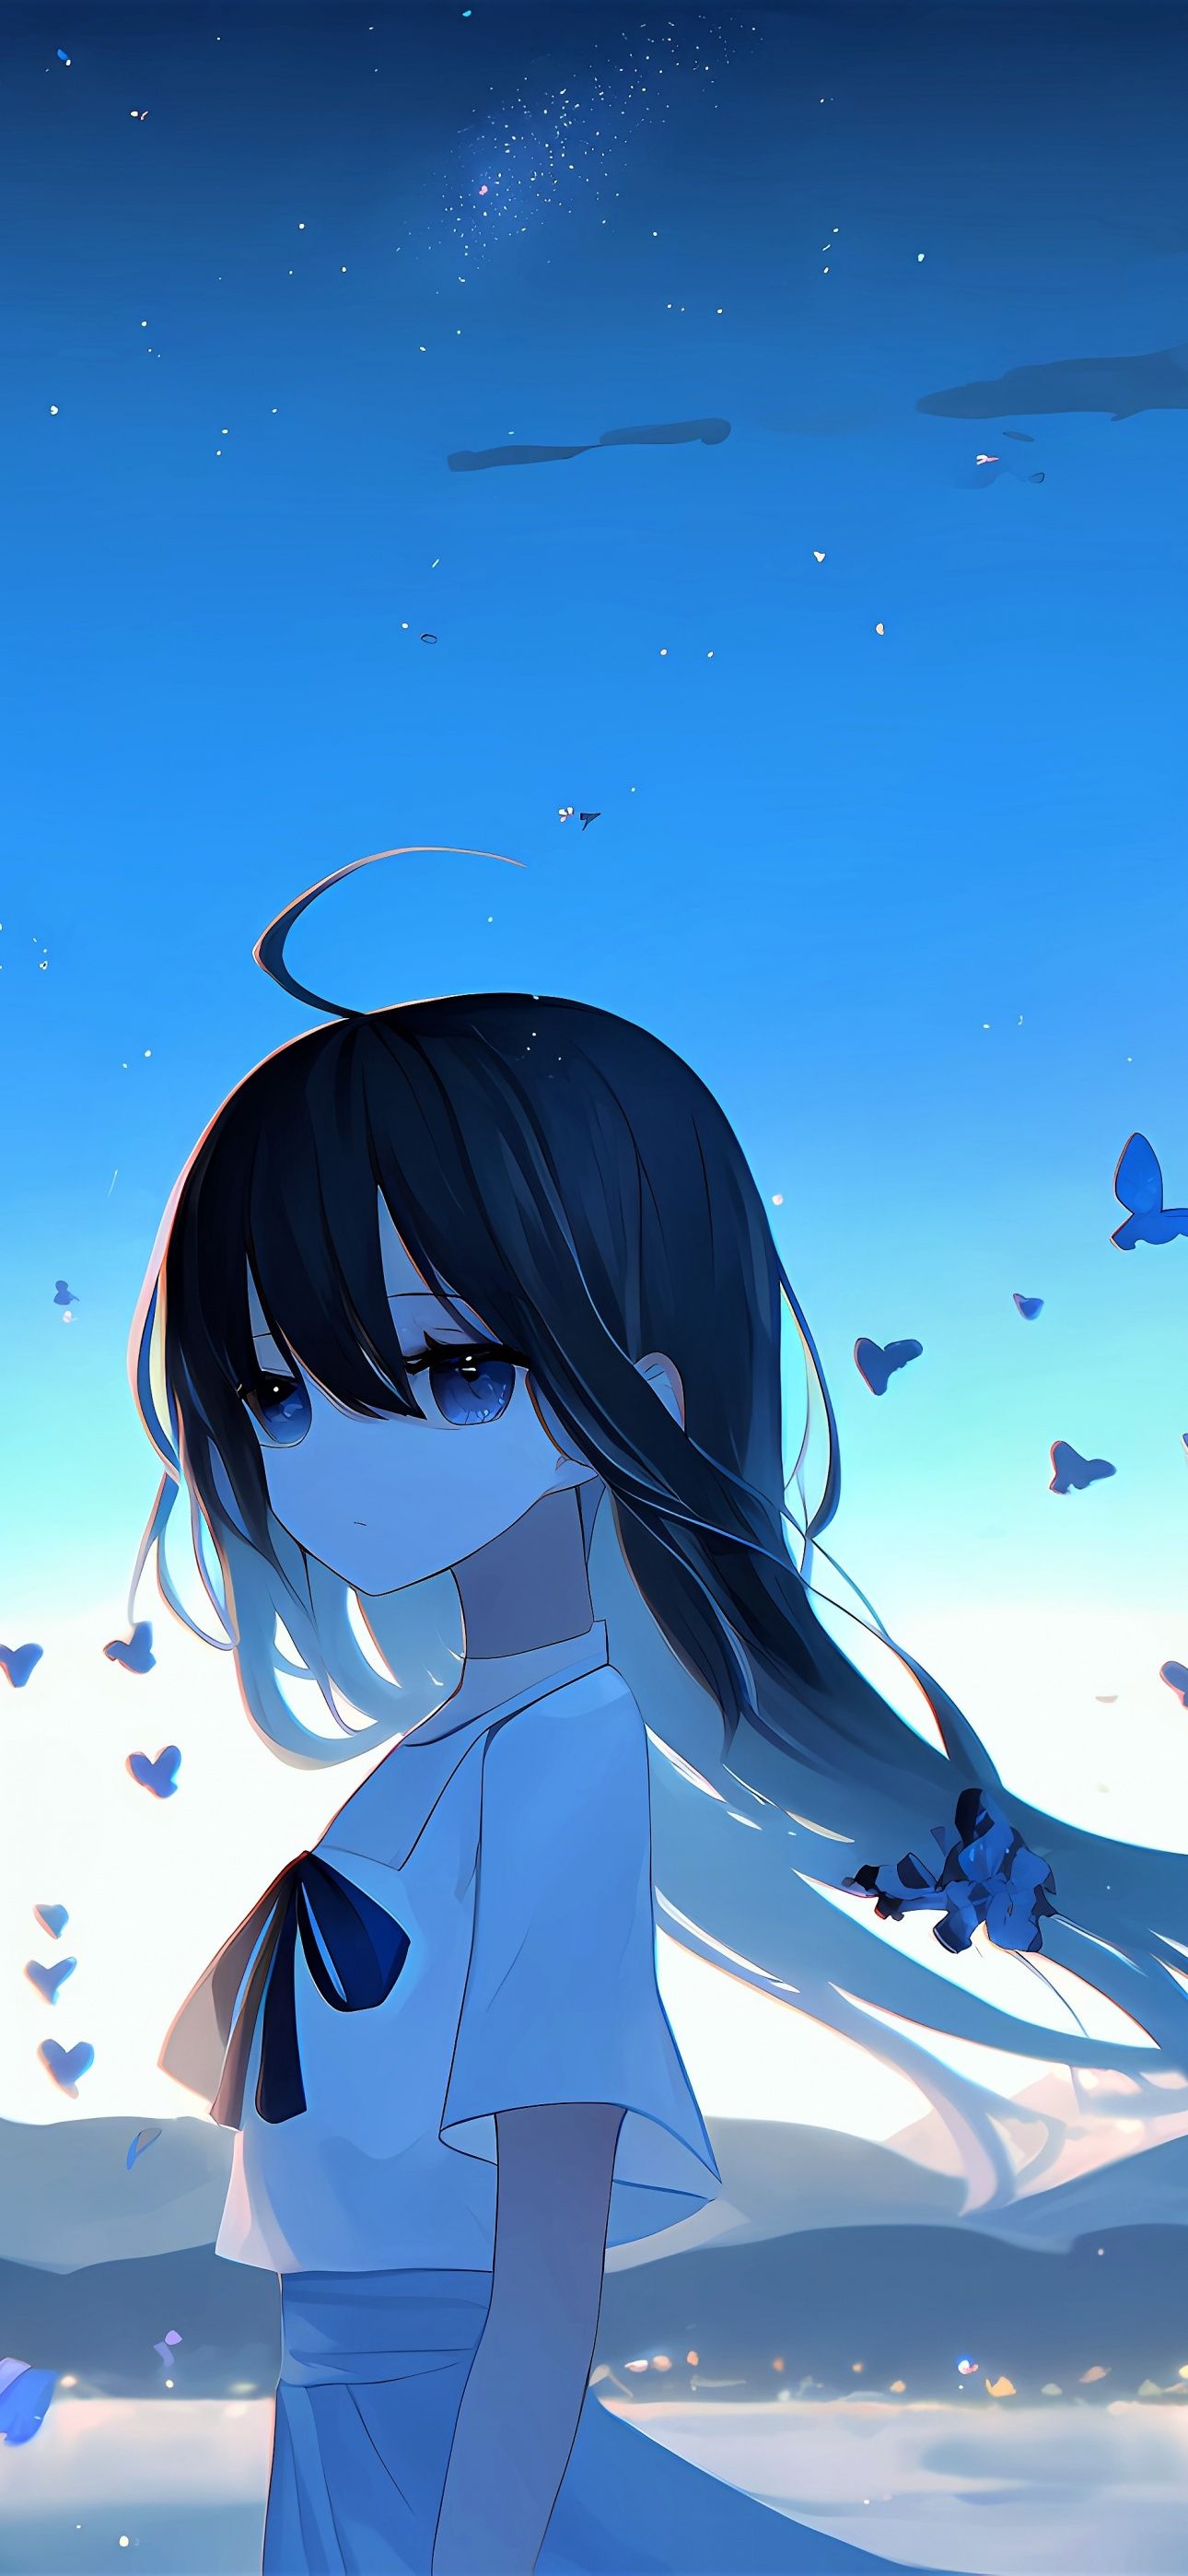 Sad girl Wallpaper 4K, Anime girl, Mood, Anime